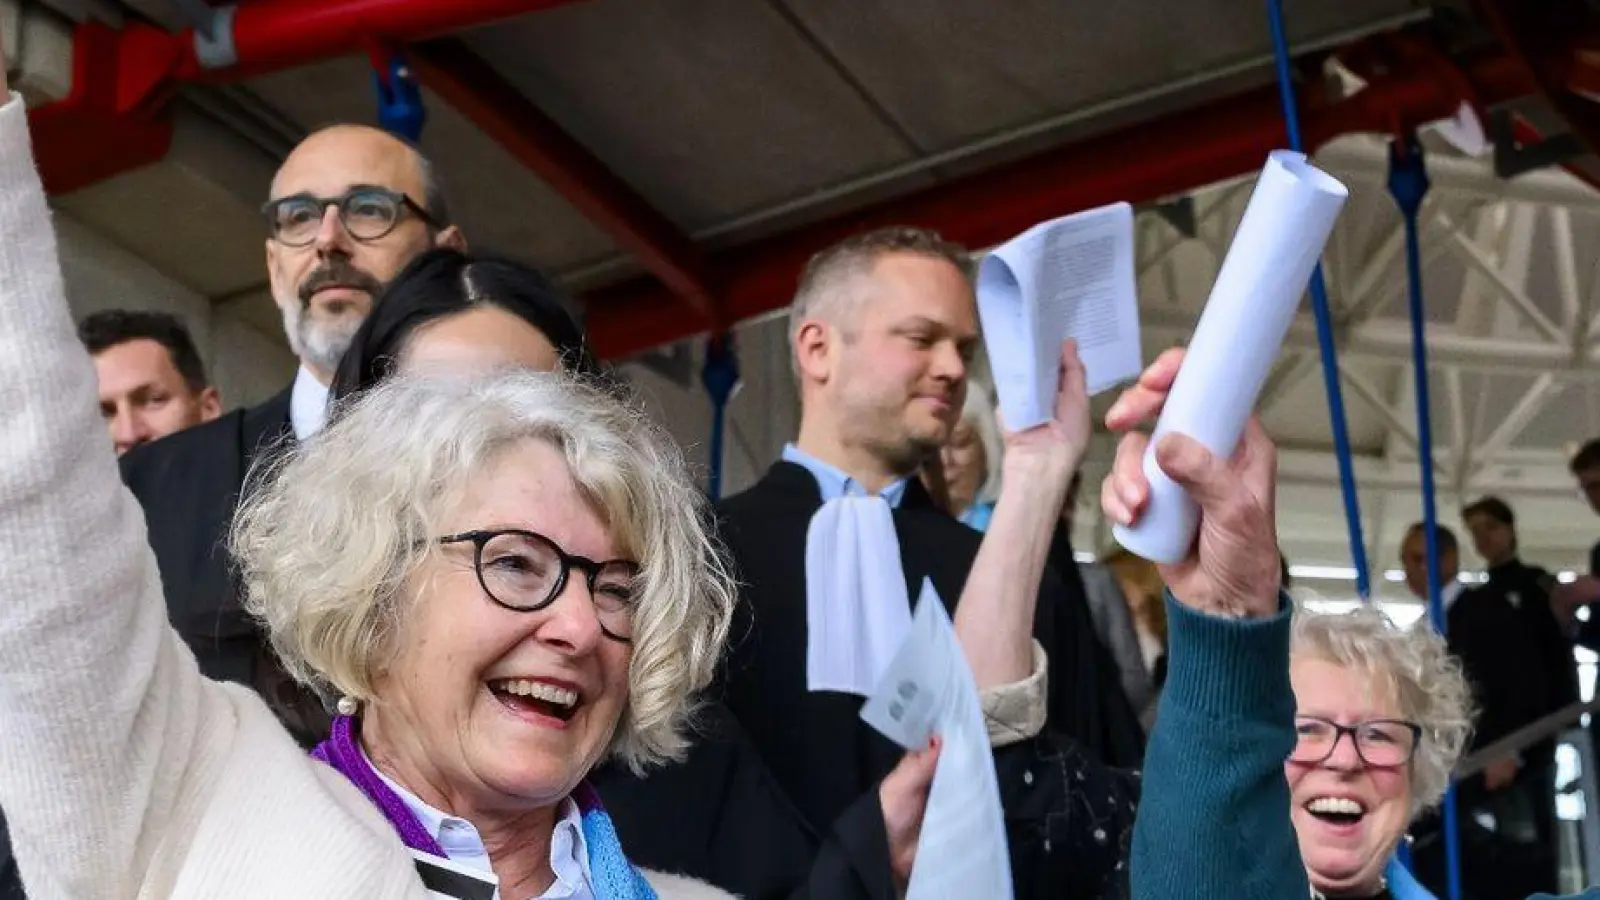 Die Schweizer Klimaseniorinnen freuen sich über das Urteil des Europäischen Gerichtshofs für Menschenrechte in Straßburg. Der EGMR entschied zugunsten der Seniorinnen: Der mangelnde Klimaschutz der Schweiz habe ihre Menschenrechte verletzt. (Foto: Jean-Christophe Bott/KEYSTONE/dpa)